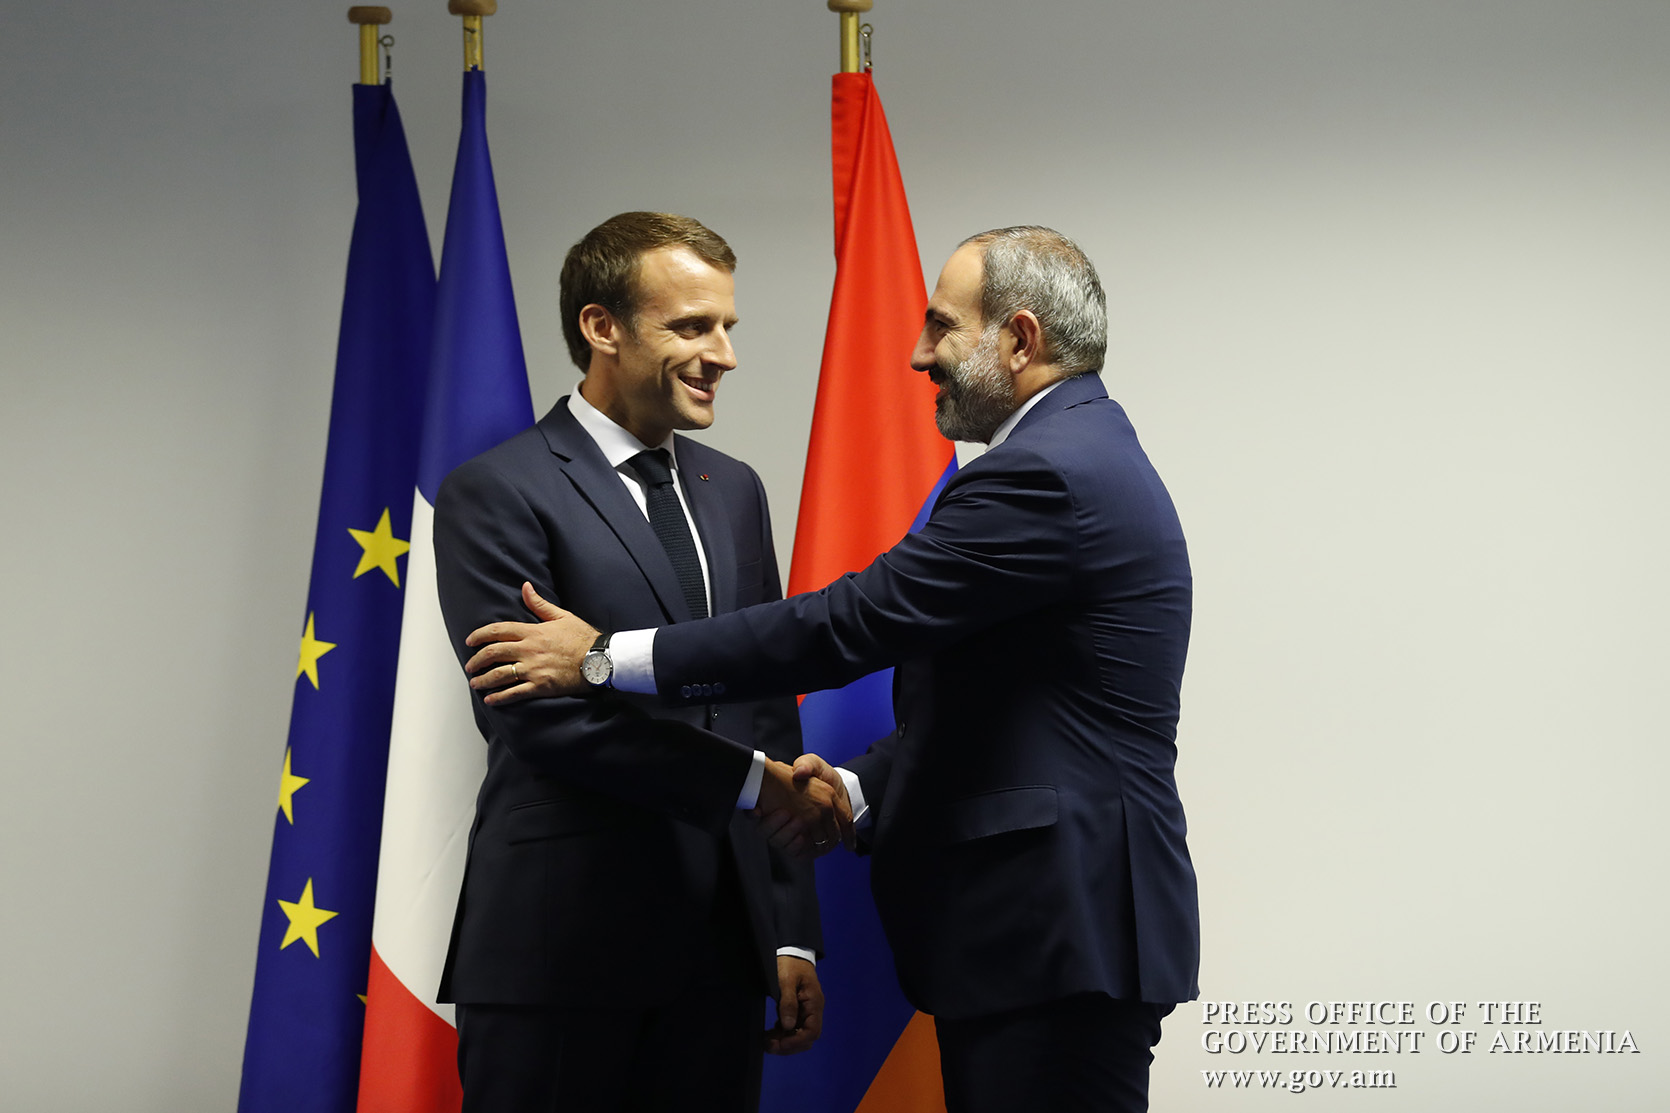 Ֆրանսիայի նախագահը ՀՀ վարչապետին հրավիրել է Փարիզ` մասնակցելու հայ-ֆրանսիական համագործակցության ֆորումին